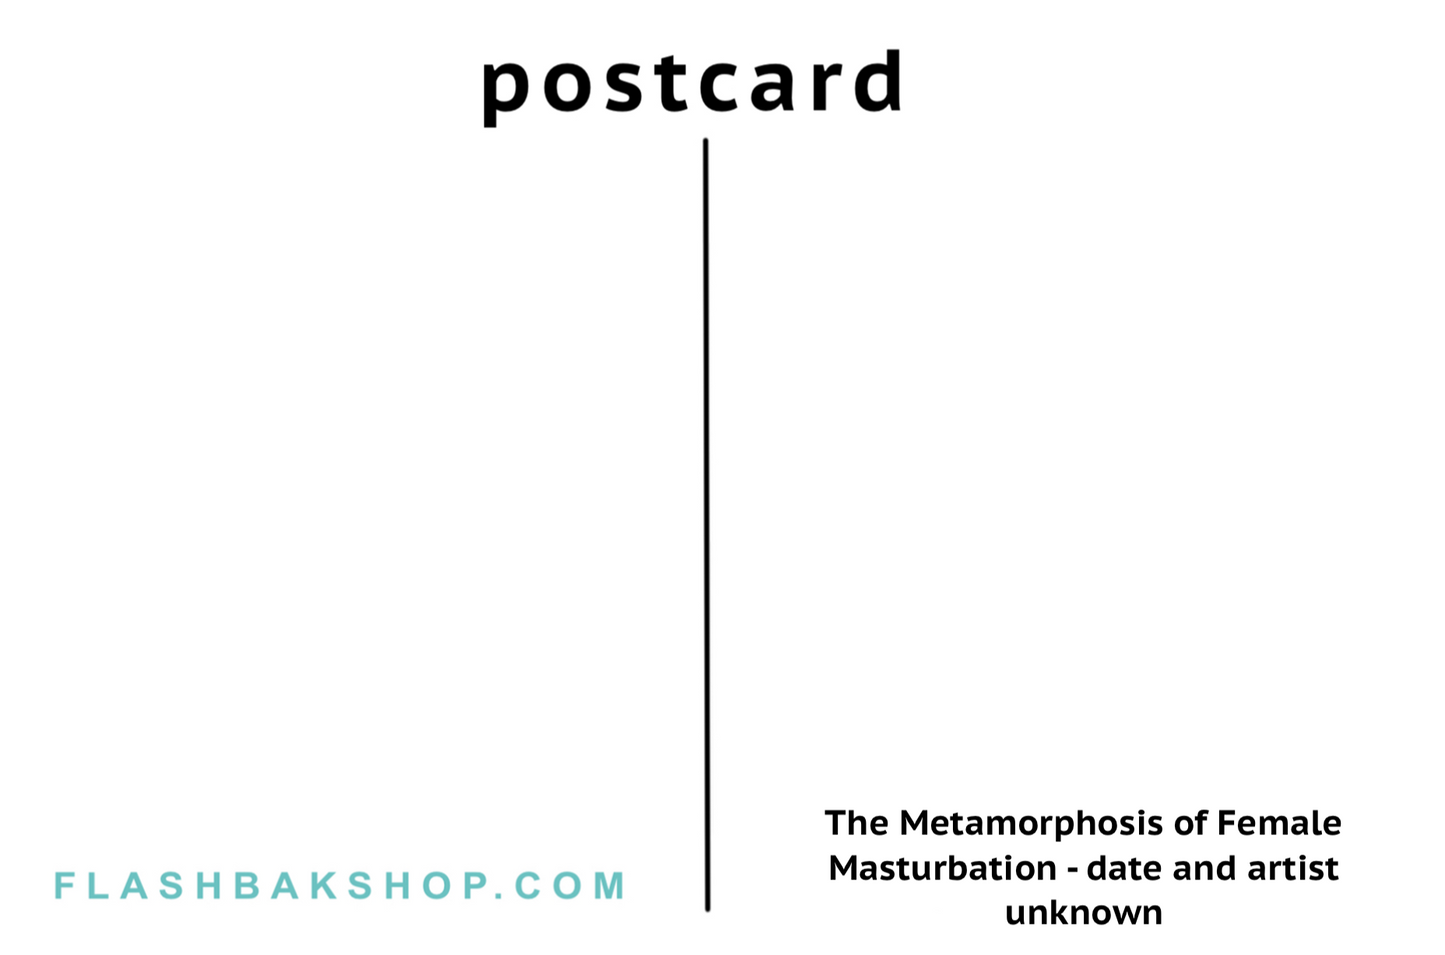 La métamorphose de la masturbation féminine, date et artiste inconnus - Carte postale